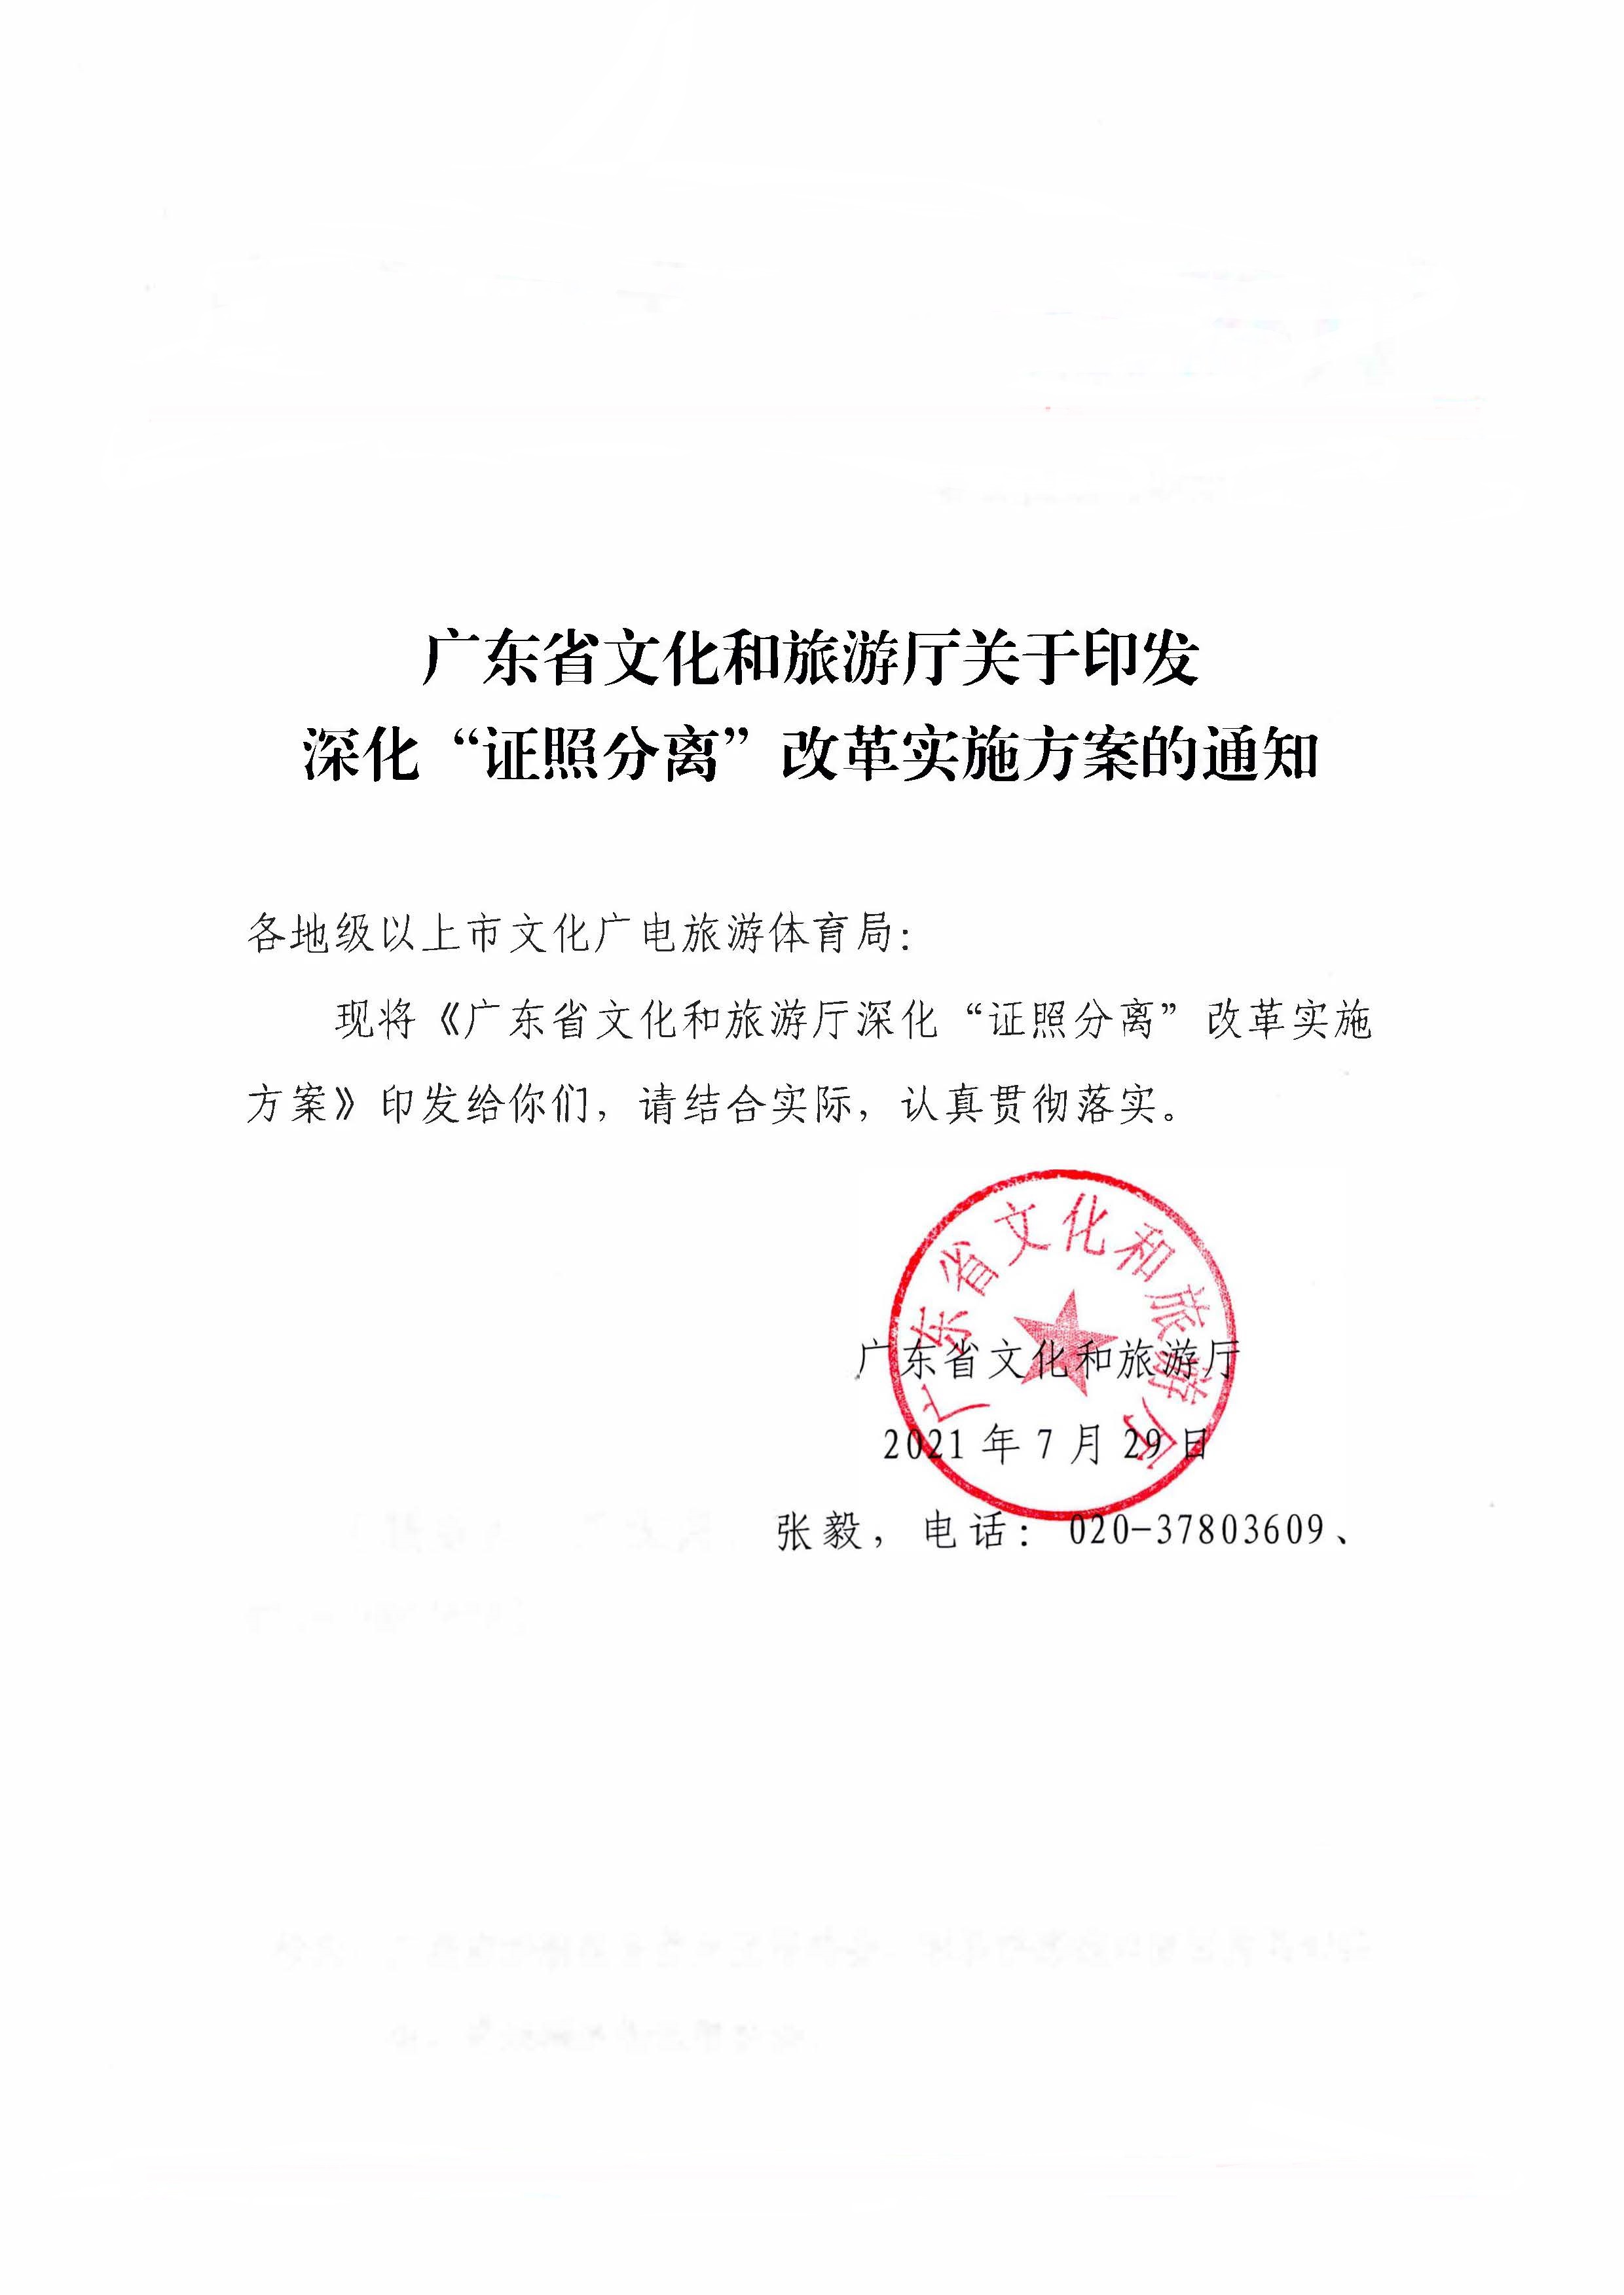 广东省文化和旅游厅印发证照分离改革实施方案的通知_页面_01.jpg